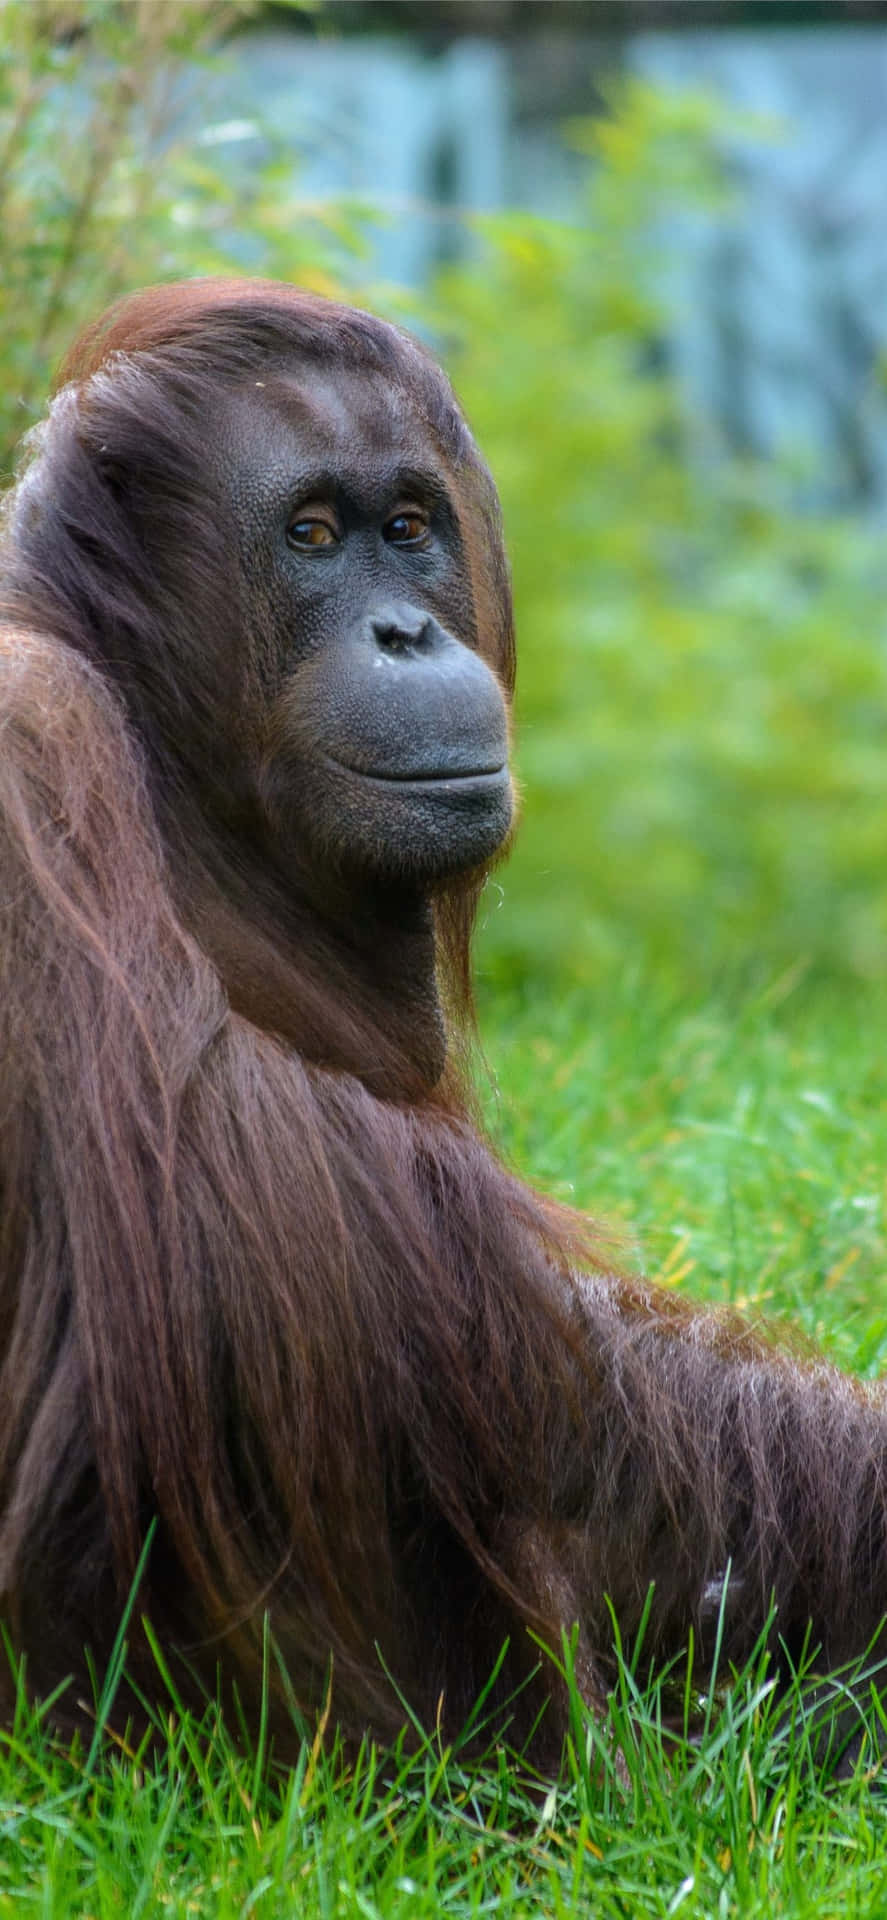 Großeraffe In Der Natur: Orang-utan Wallpaper